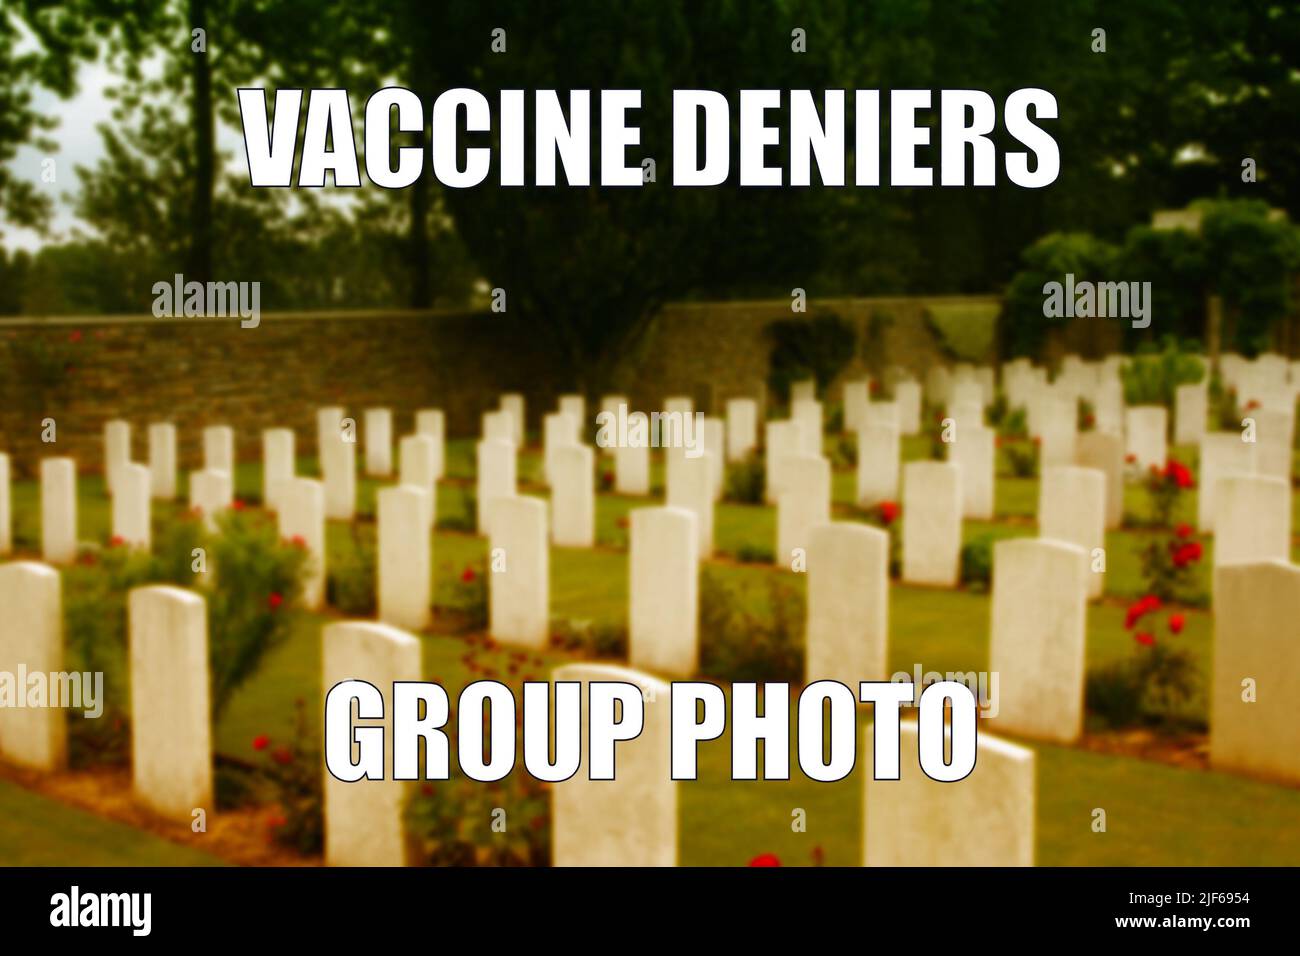 Vacuna deniers cementerio humor oscuro divertido meme para compartir medios sociales. Humor negro sobre el escepticismo de las vacunas y los teóricos de la conspiración anti-vaxxer. Foto de stock